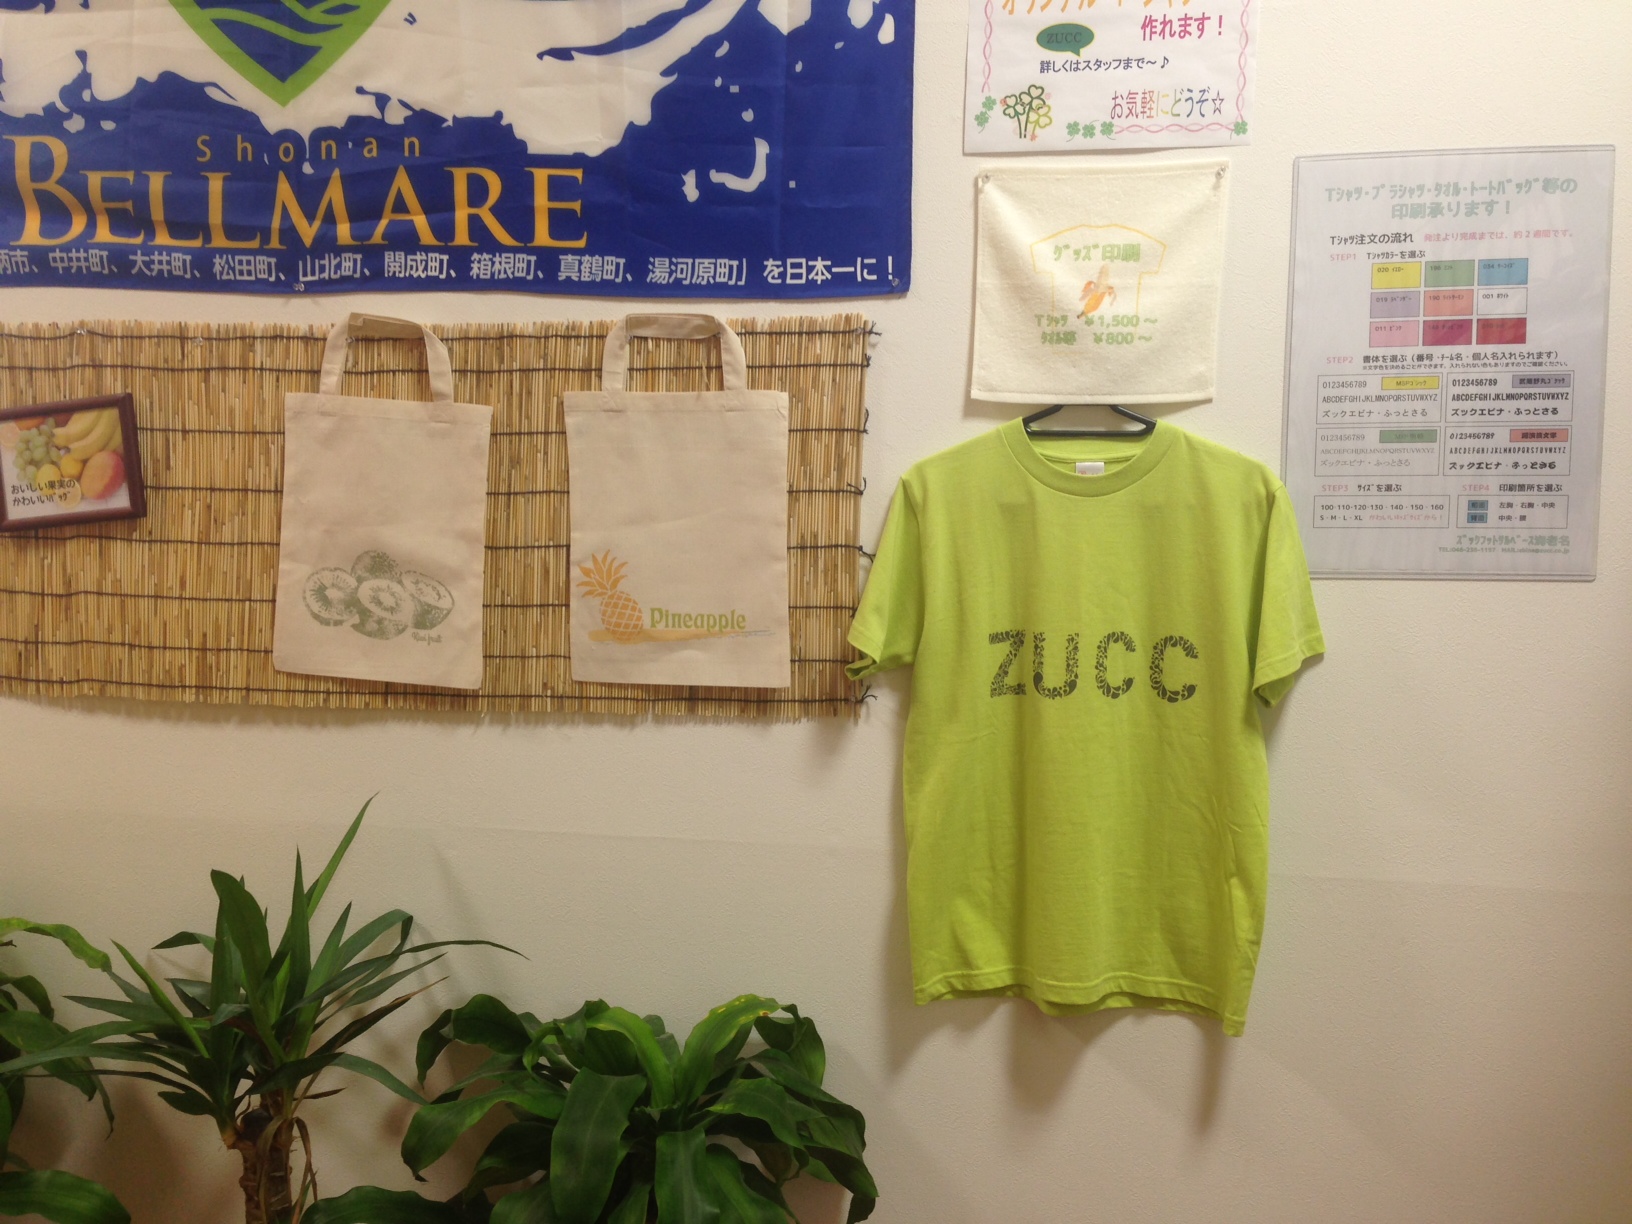 http://zucc.co.jp/staffblog/2013/06/27/dat_blog/20130627.JPG